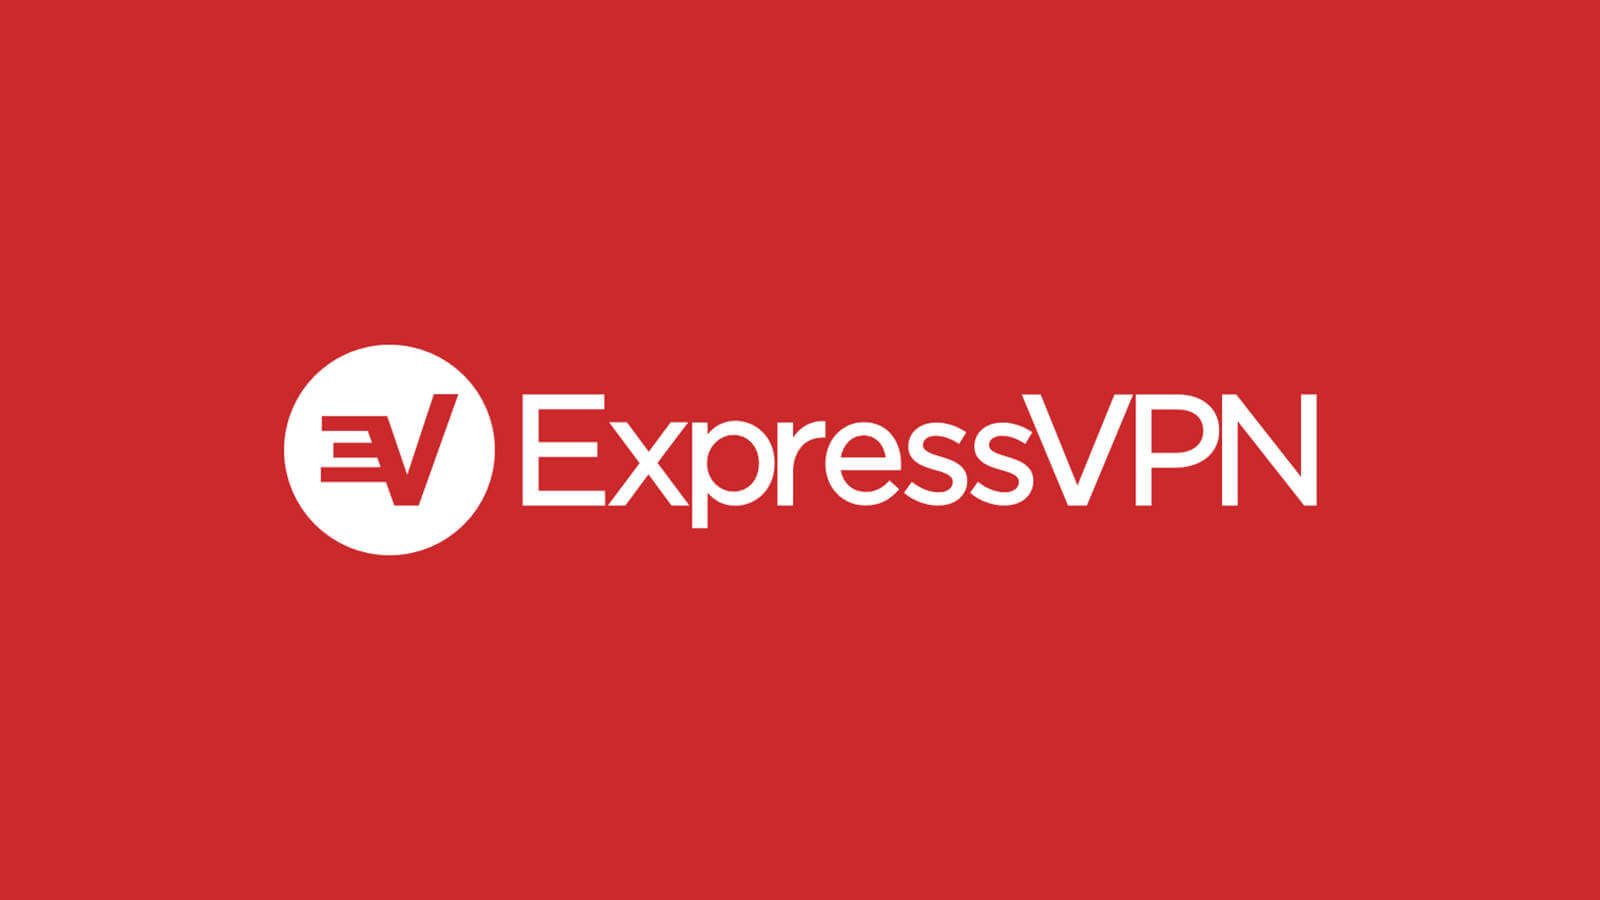 express-vpn-7-9-3-crack-serial-key-2020-latest-download-4837948